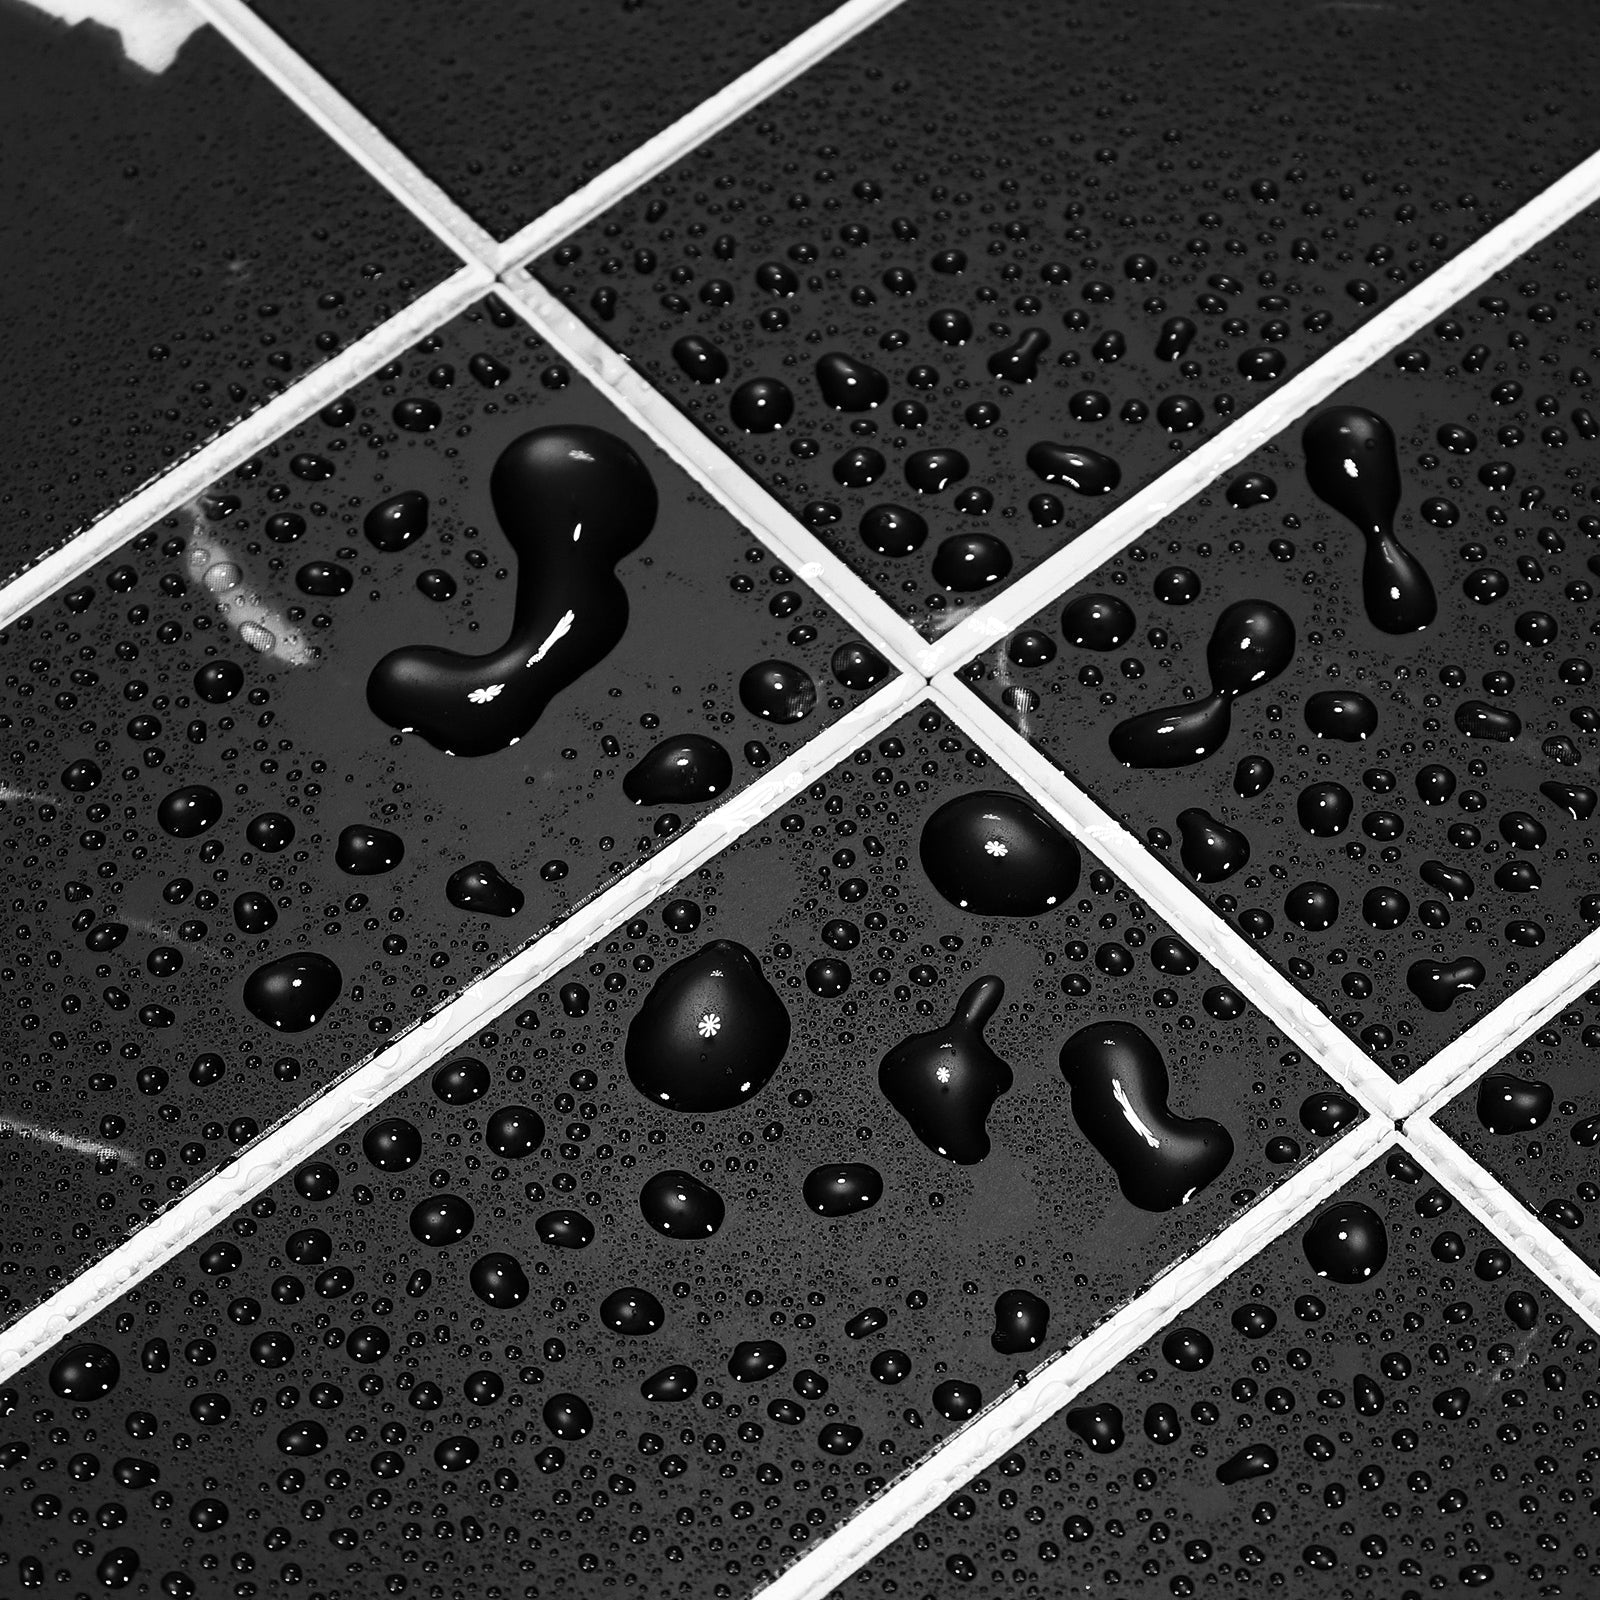 Kit Kat Stick on Composite Tile - Matte Black Marble - Stick on Tiles AustraliaStick on Tiles Australia